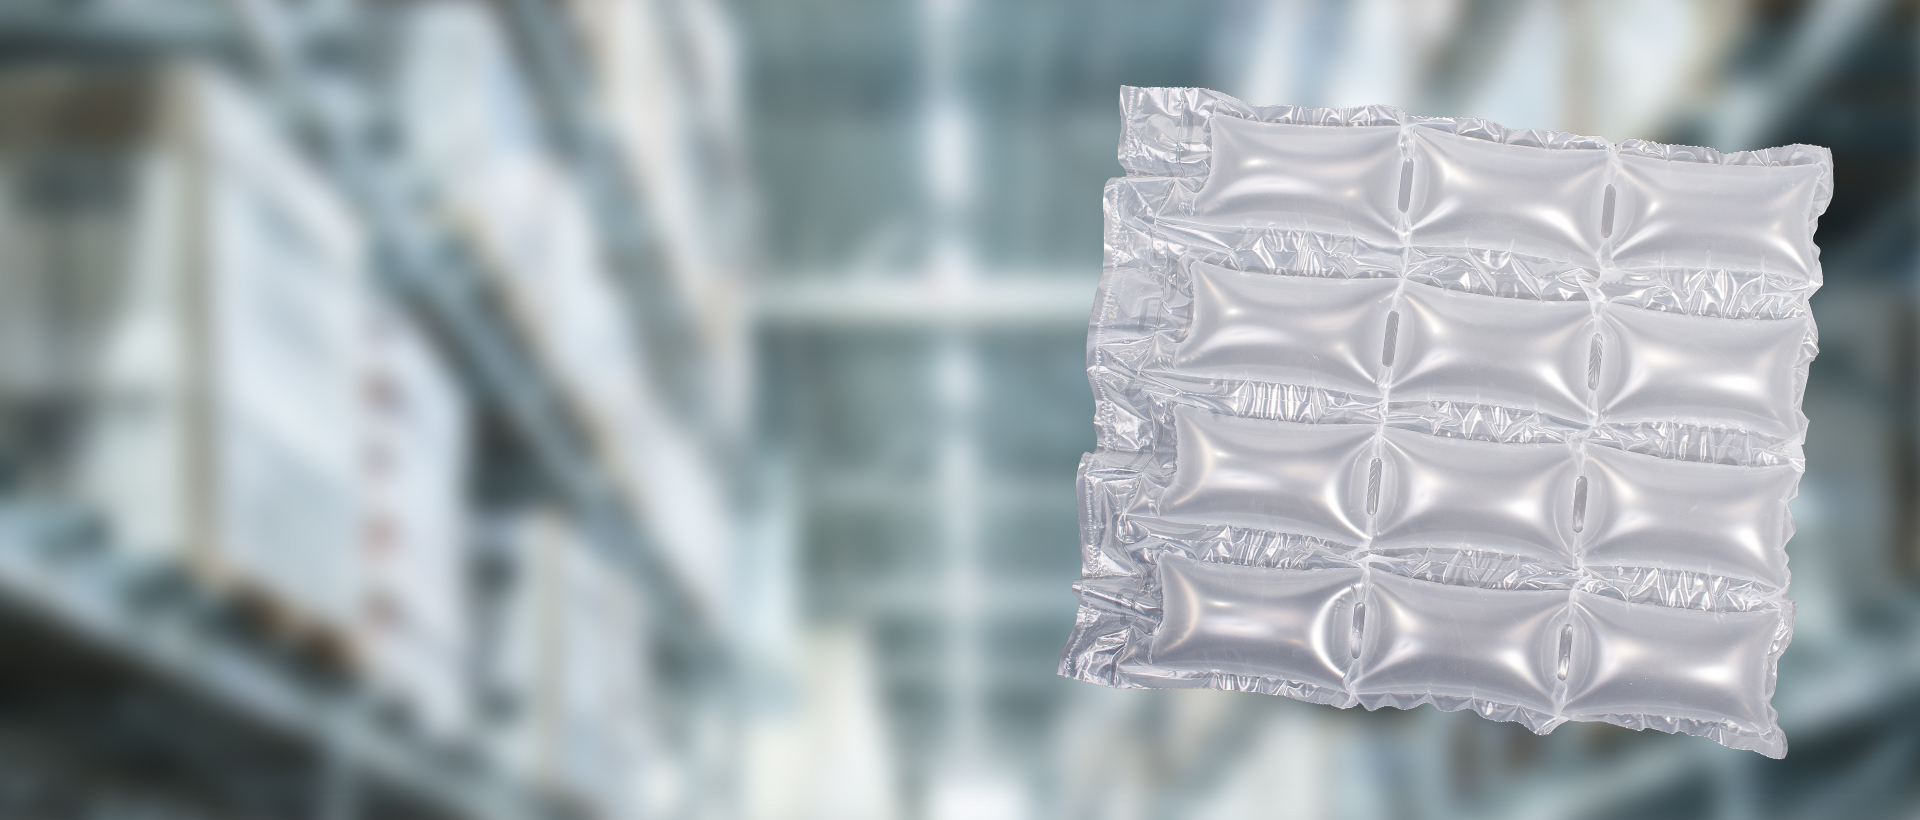 Protección Robusta Extra Comprimida 750mm x 60m Paquete de 1 Sealed Air Plástico de Burbujas en Plástico Transparente 